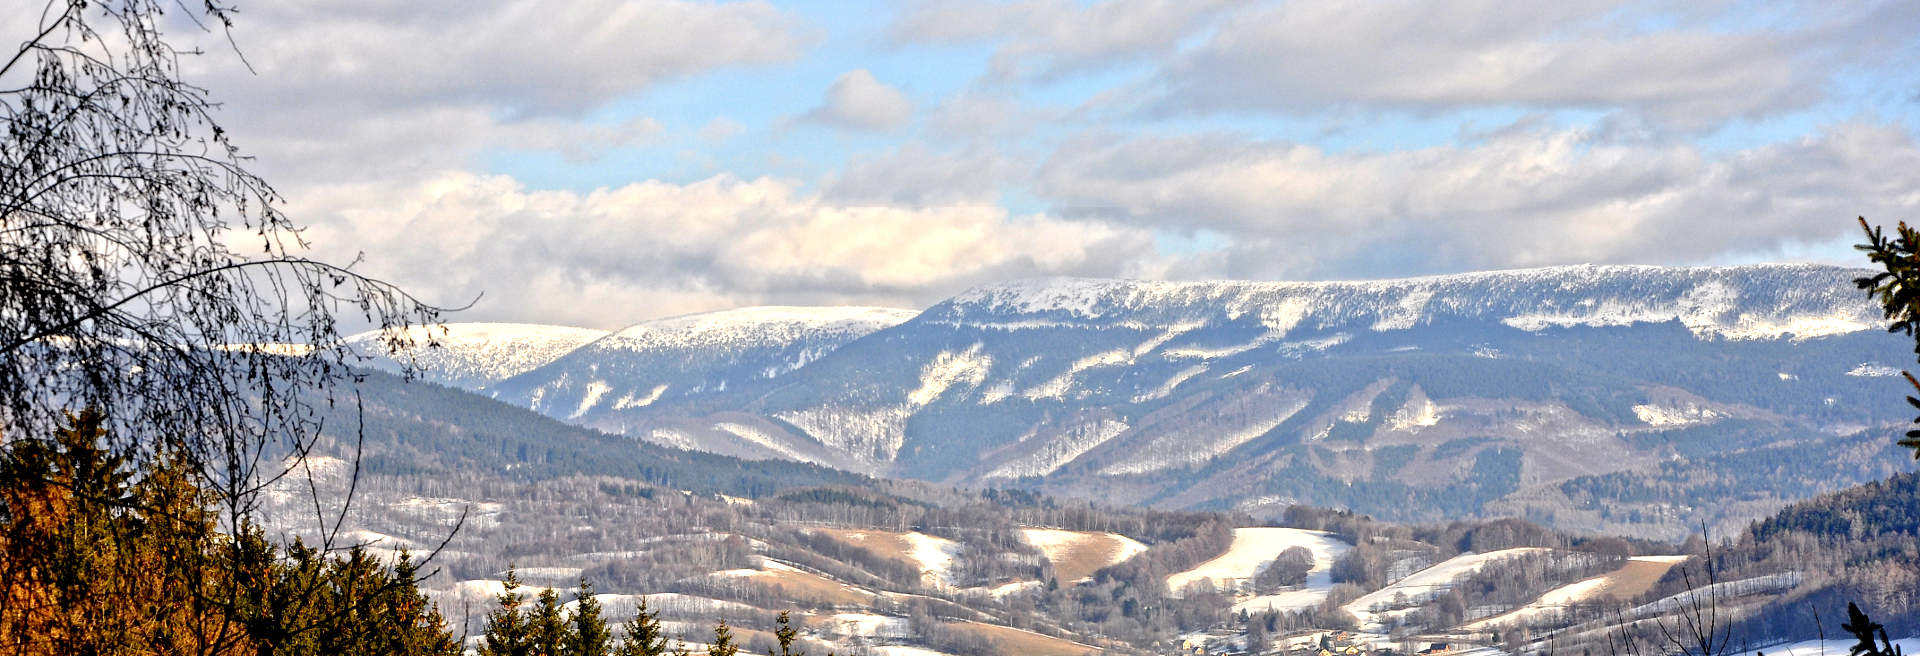 Altvatergebirge im Winter